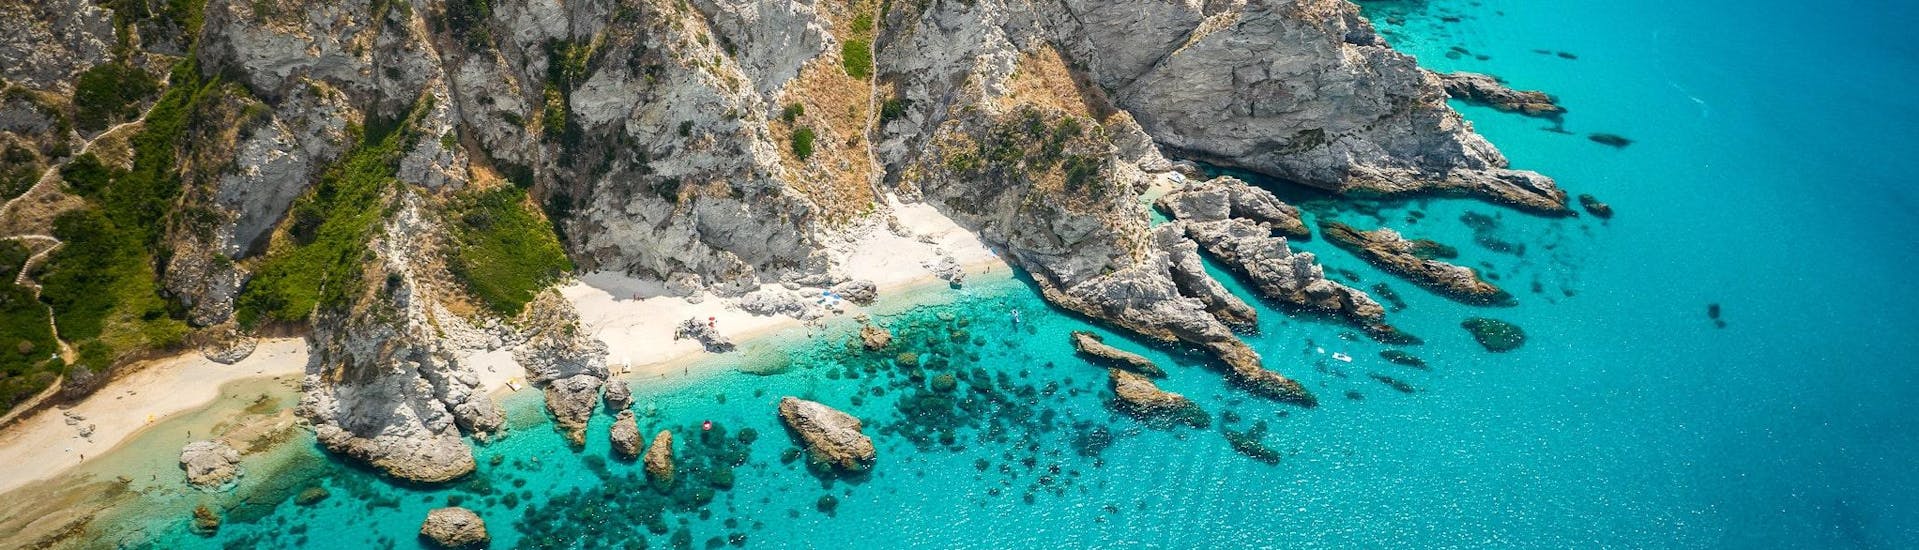 Aerial view over the rocky Capo Vaticano, which is a popular destination for boat trips along the Costa degli Dei in Calabria.